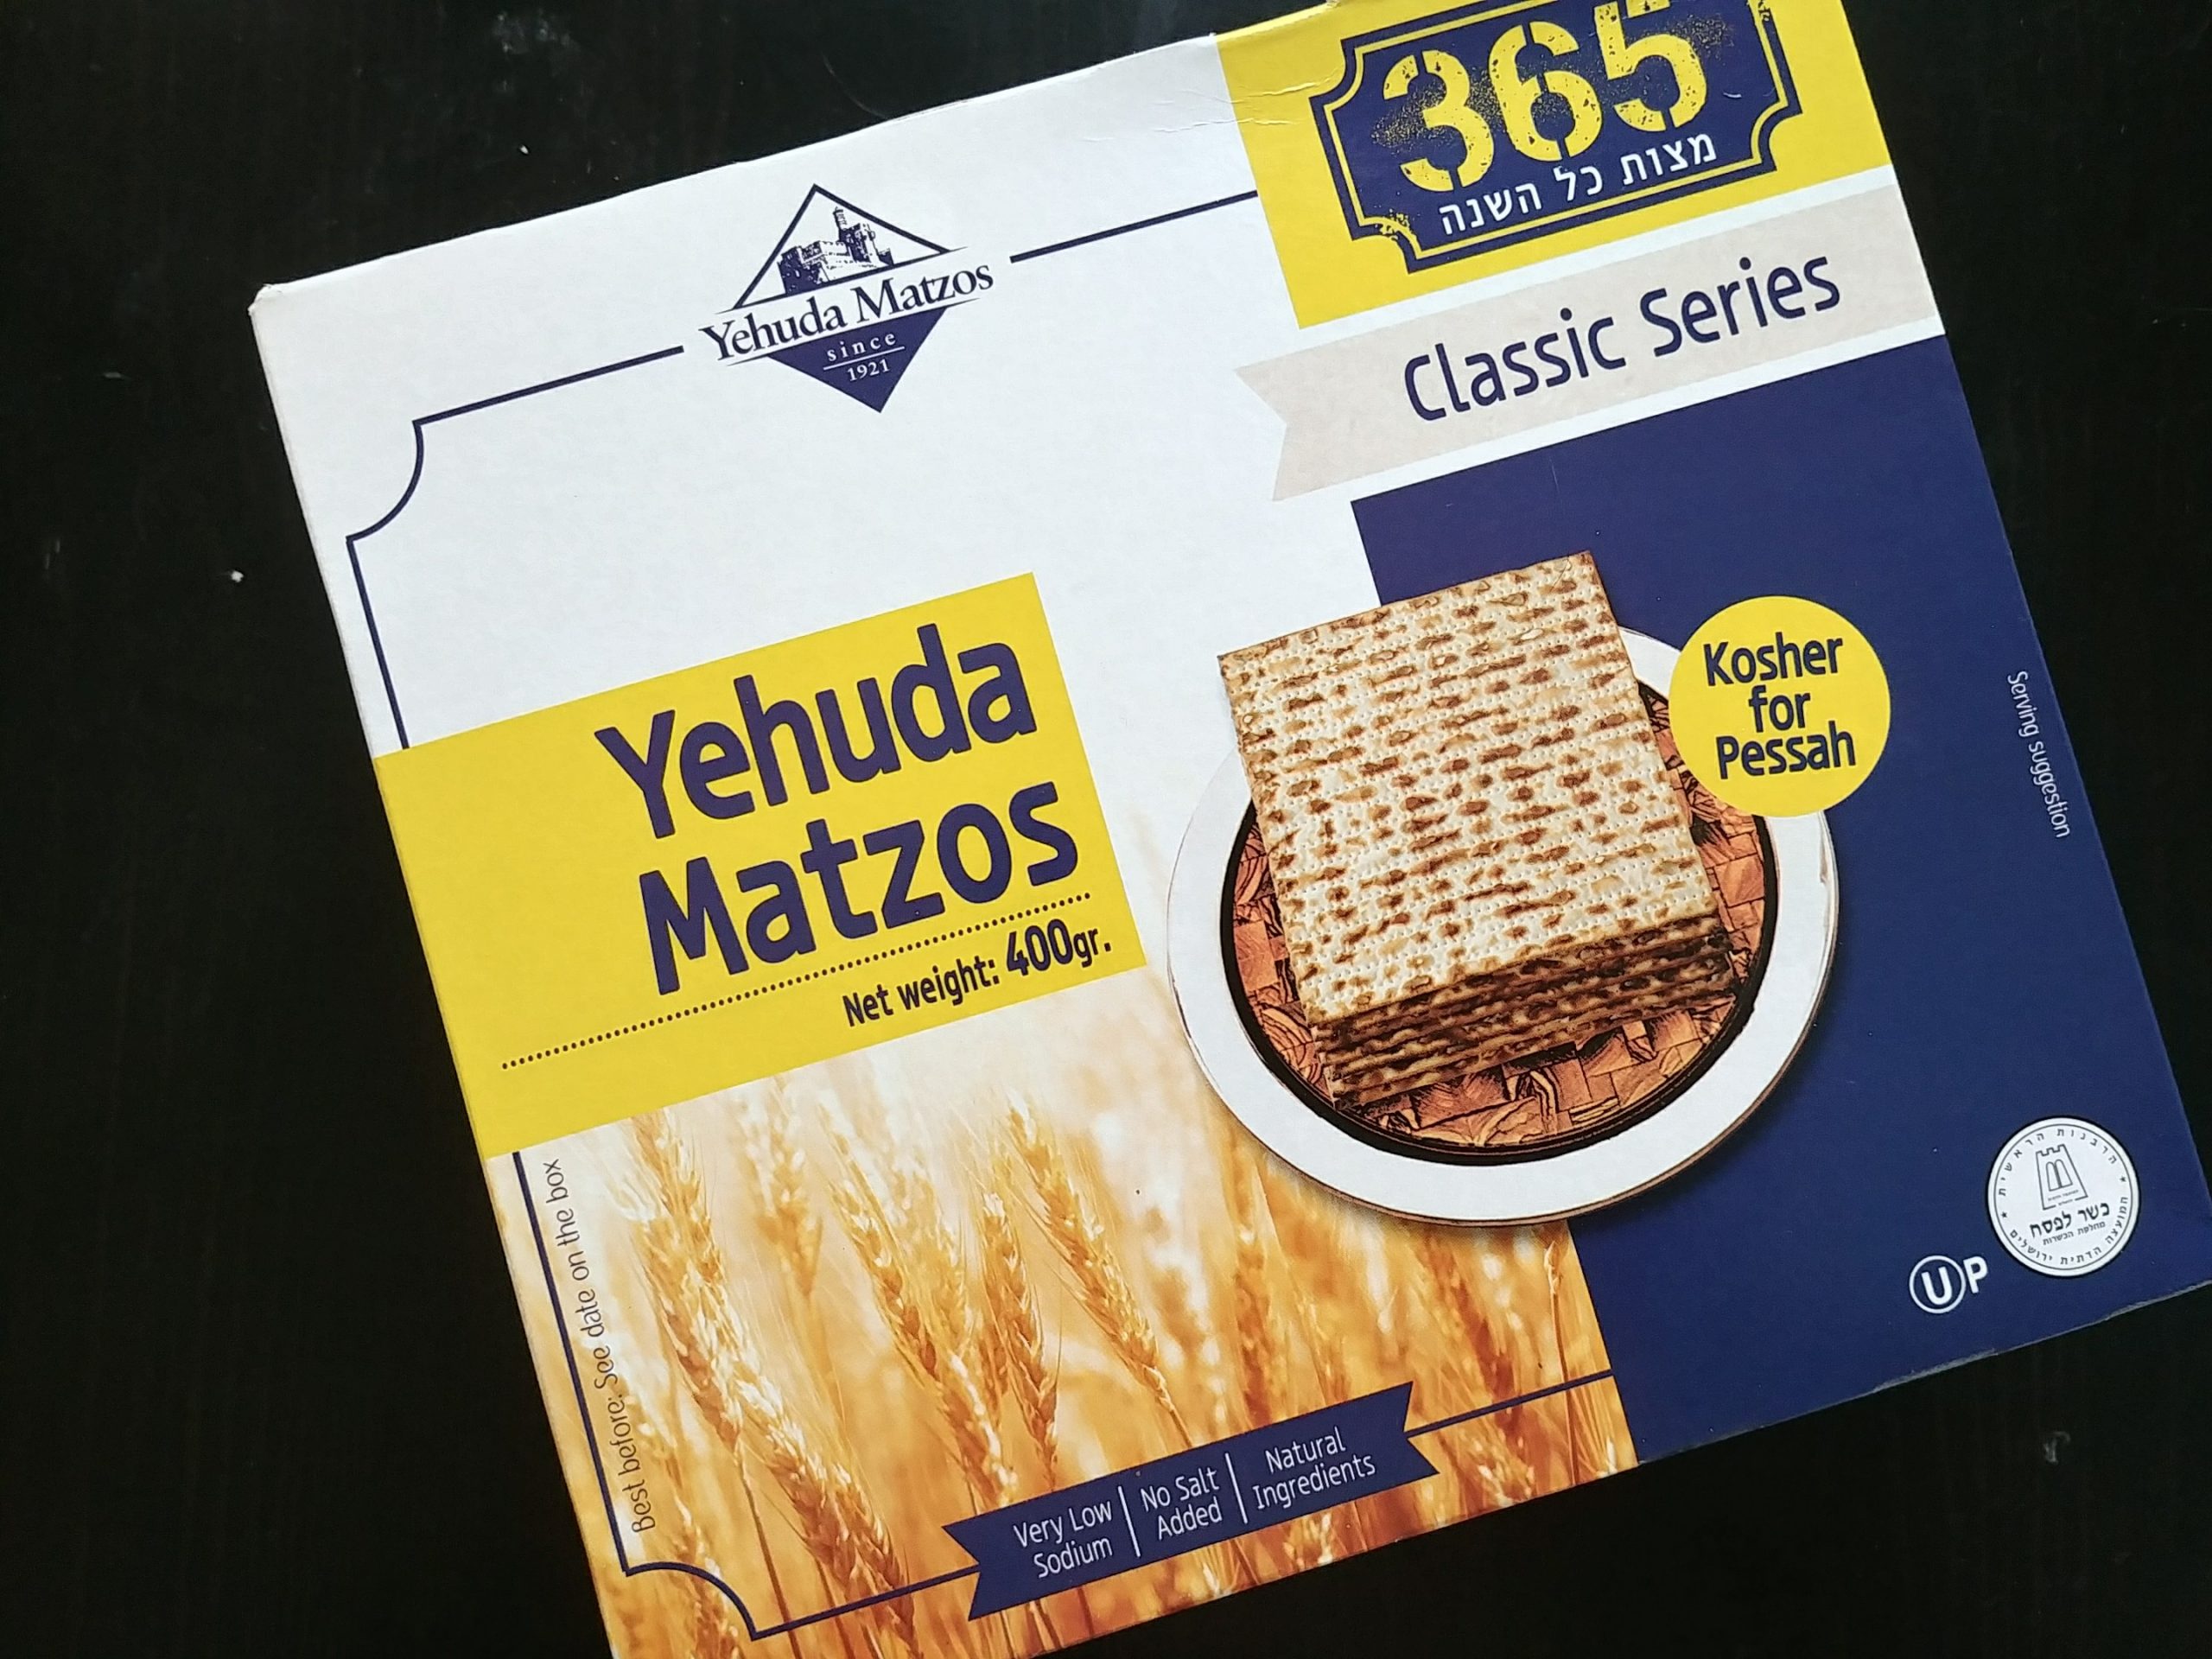 A box of matzah